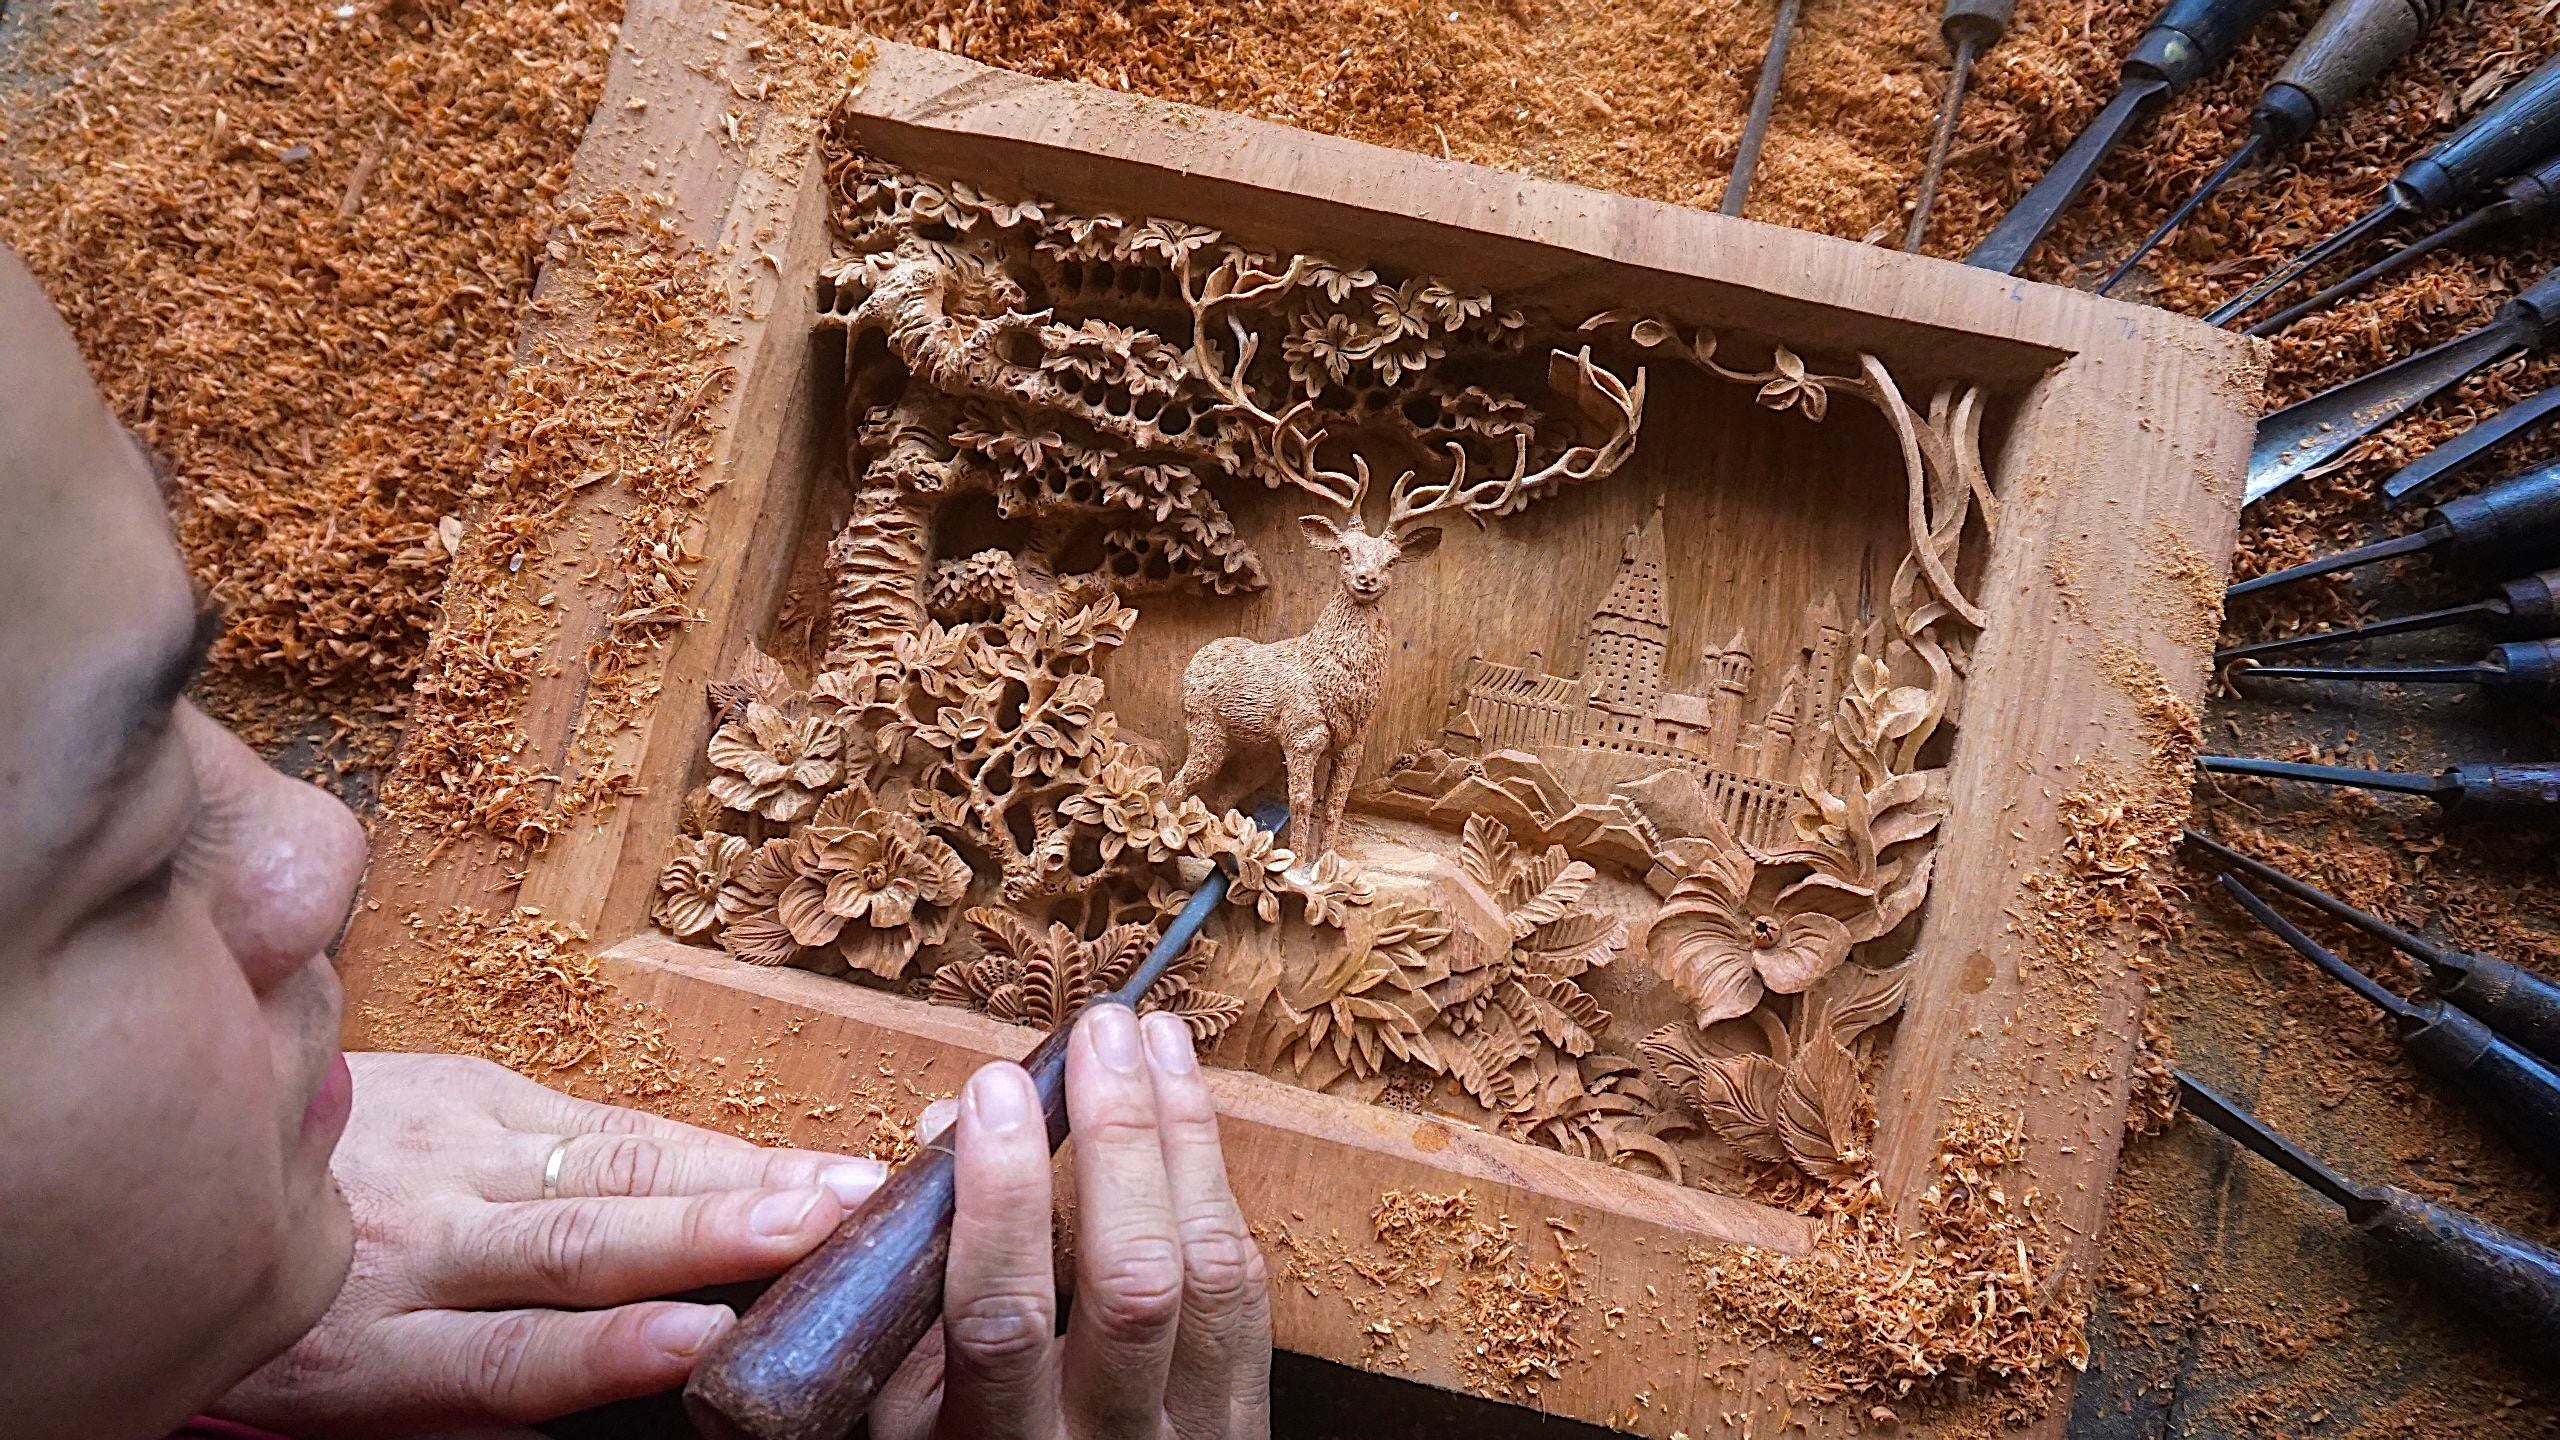 Deer - The Patronus Charm - Wood Carving